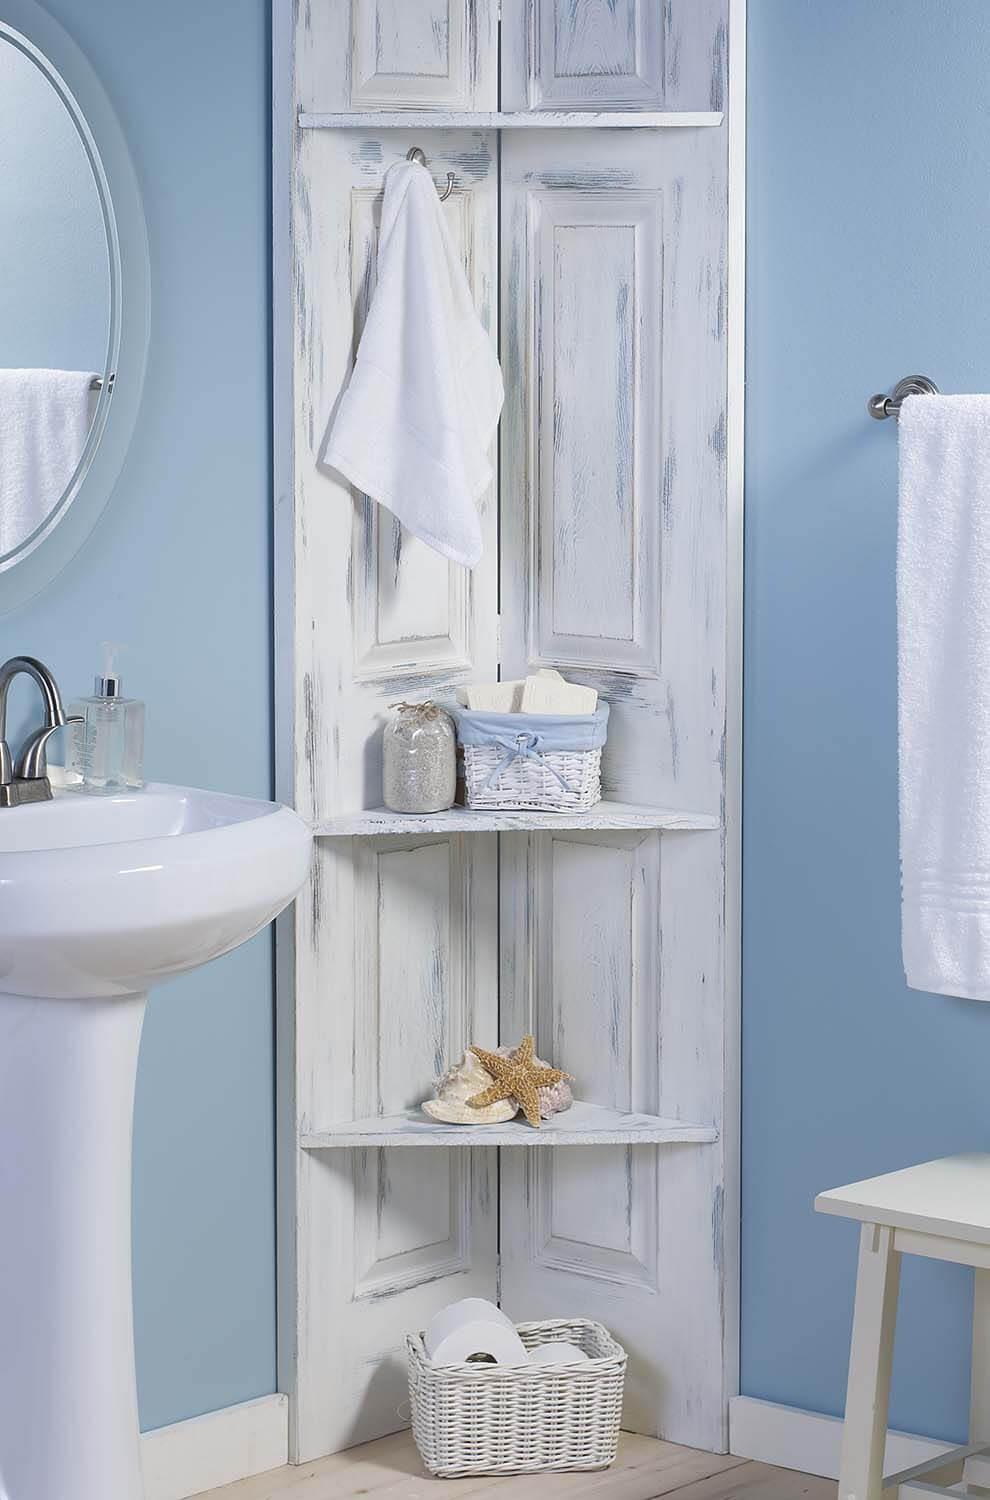 best DIY Bathroom Shelf Ideas